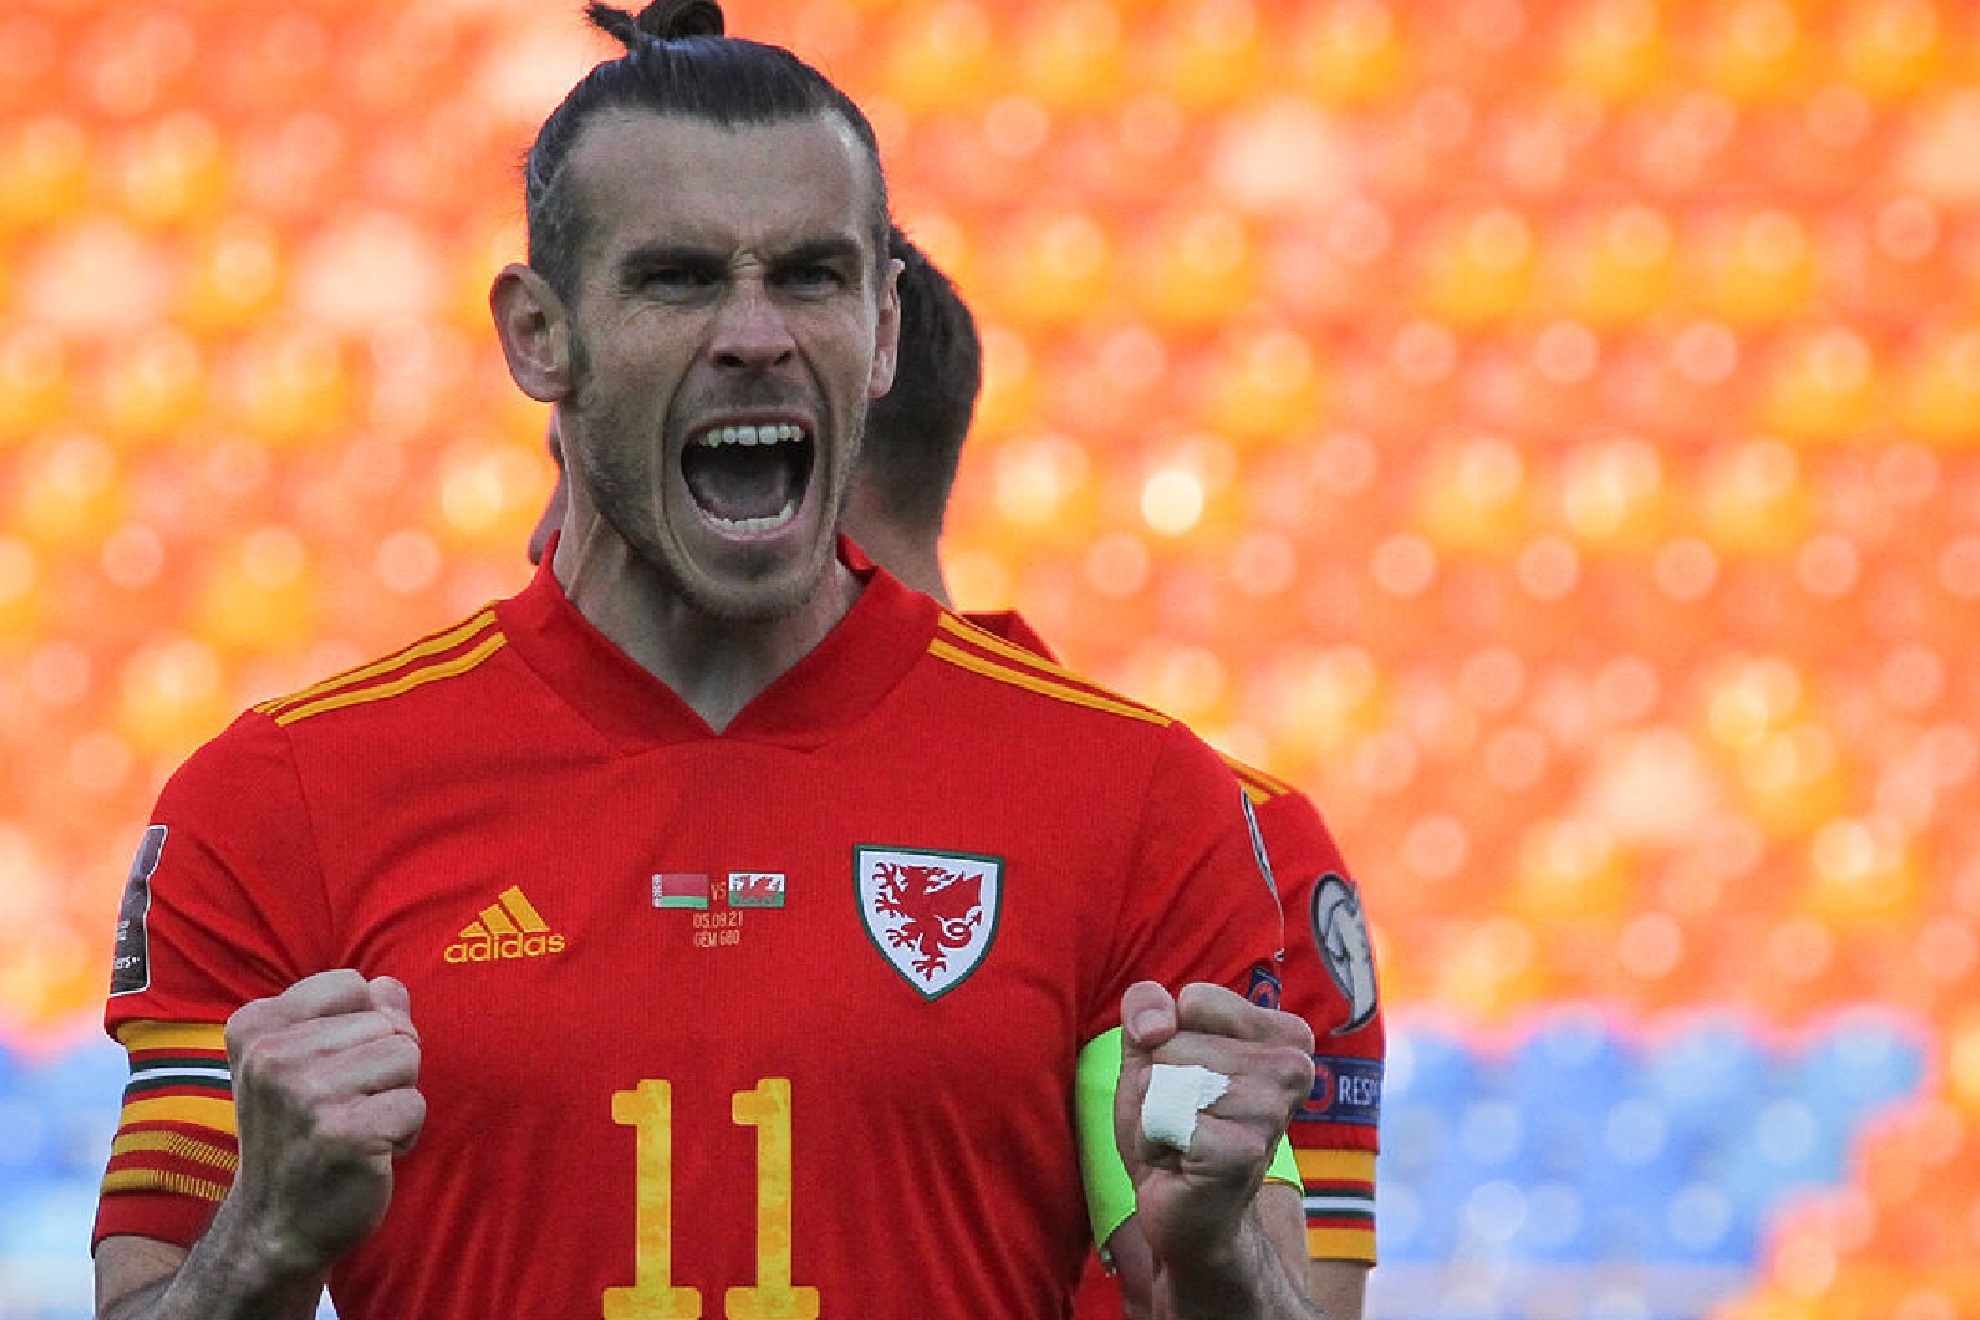 Los negocios de Bale fuera del fútbol: ¿A qué se dedicará ahora y qué empresas tiene?